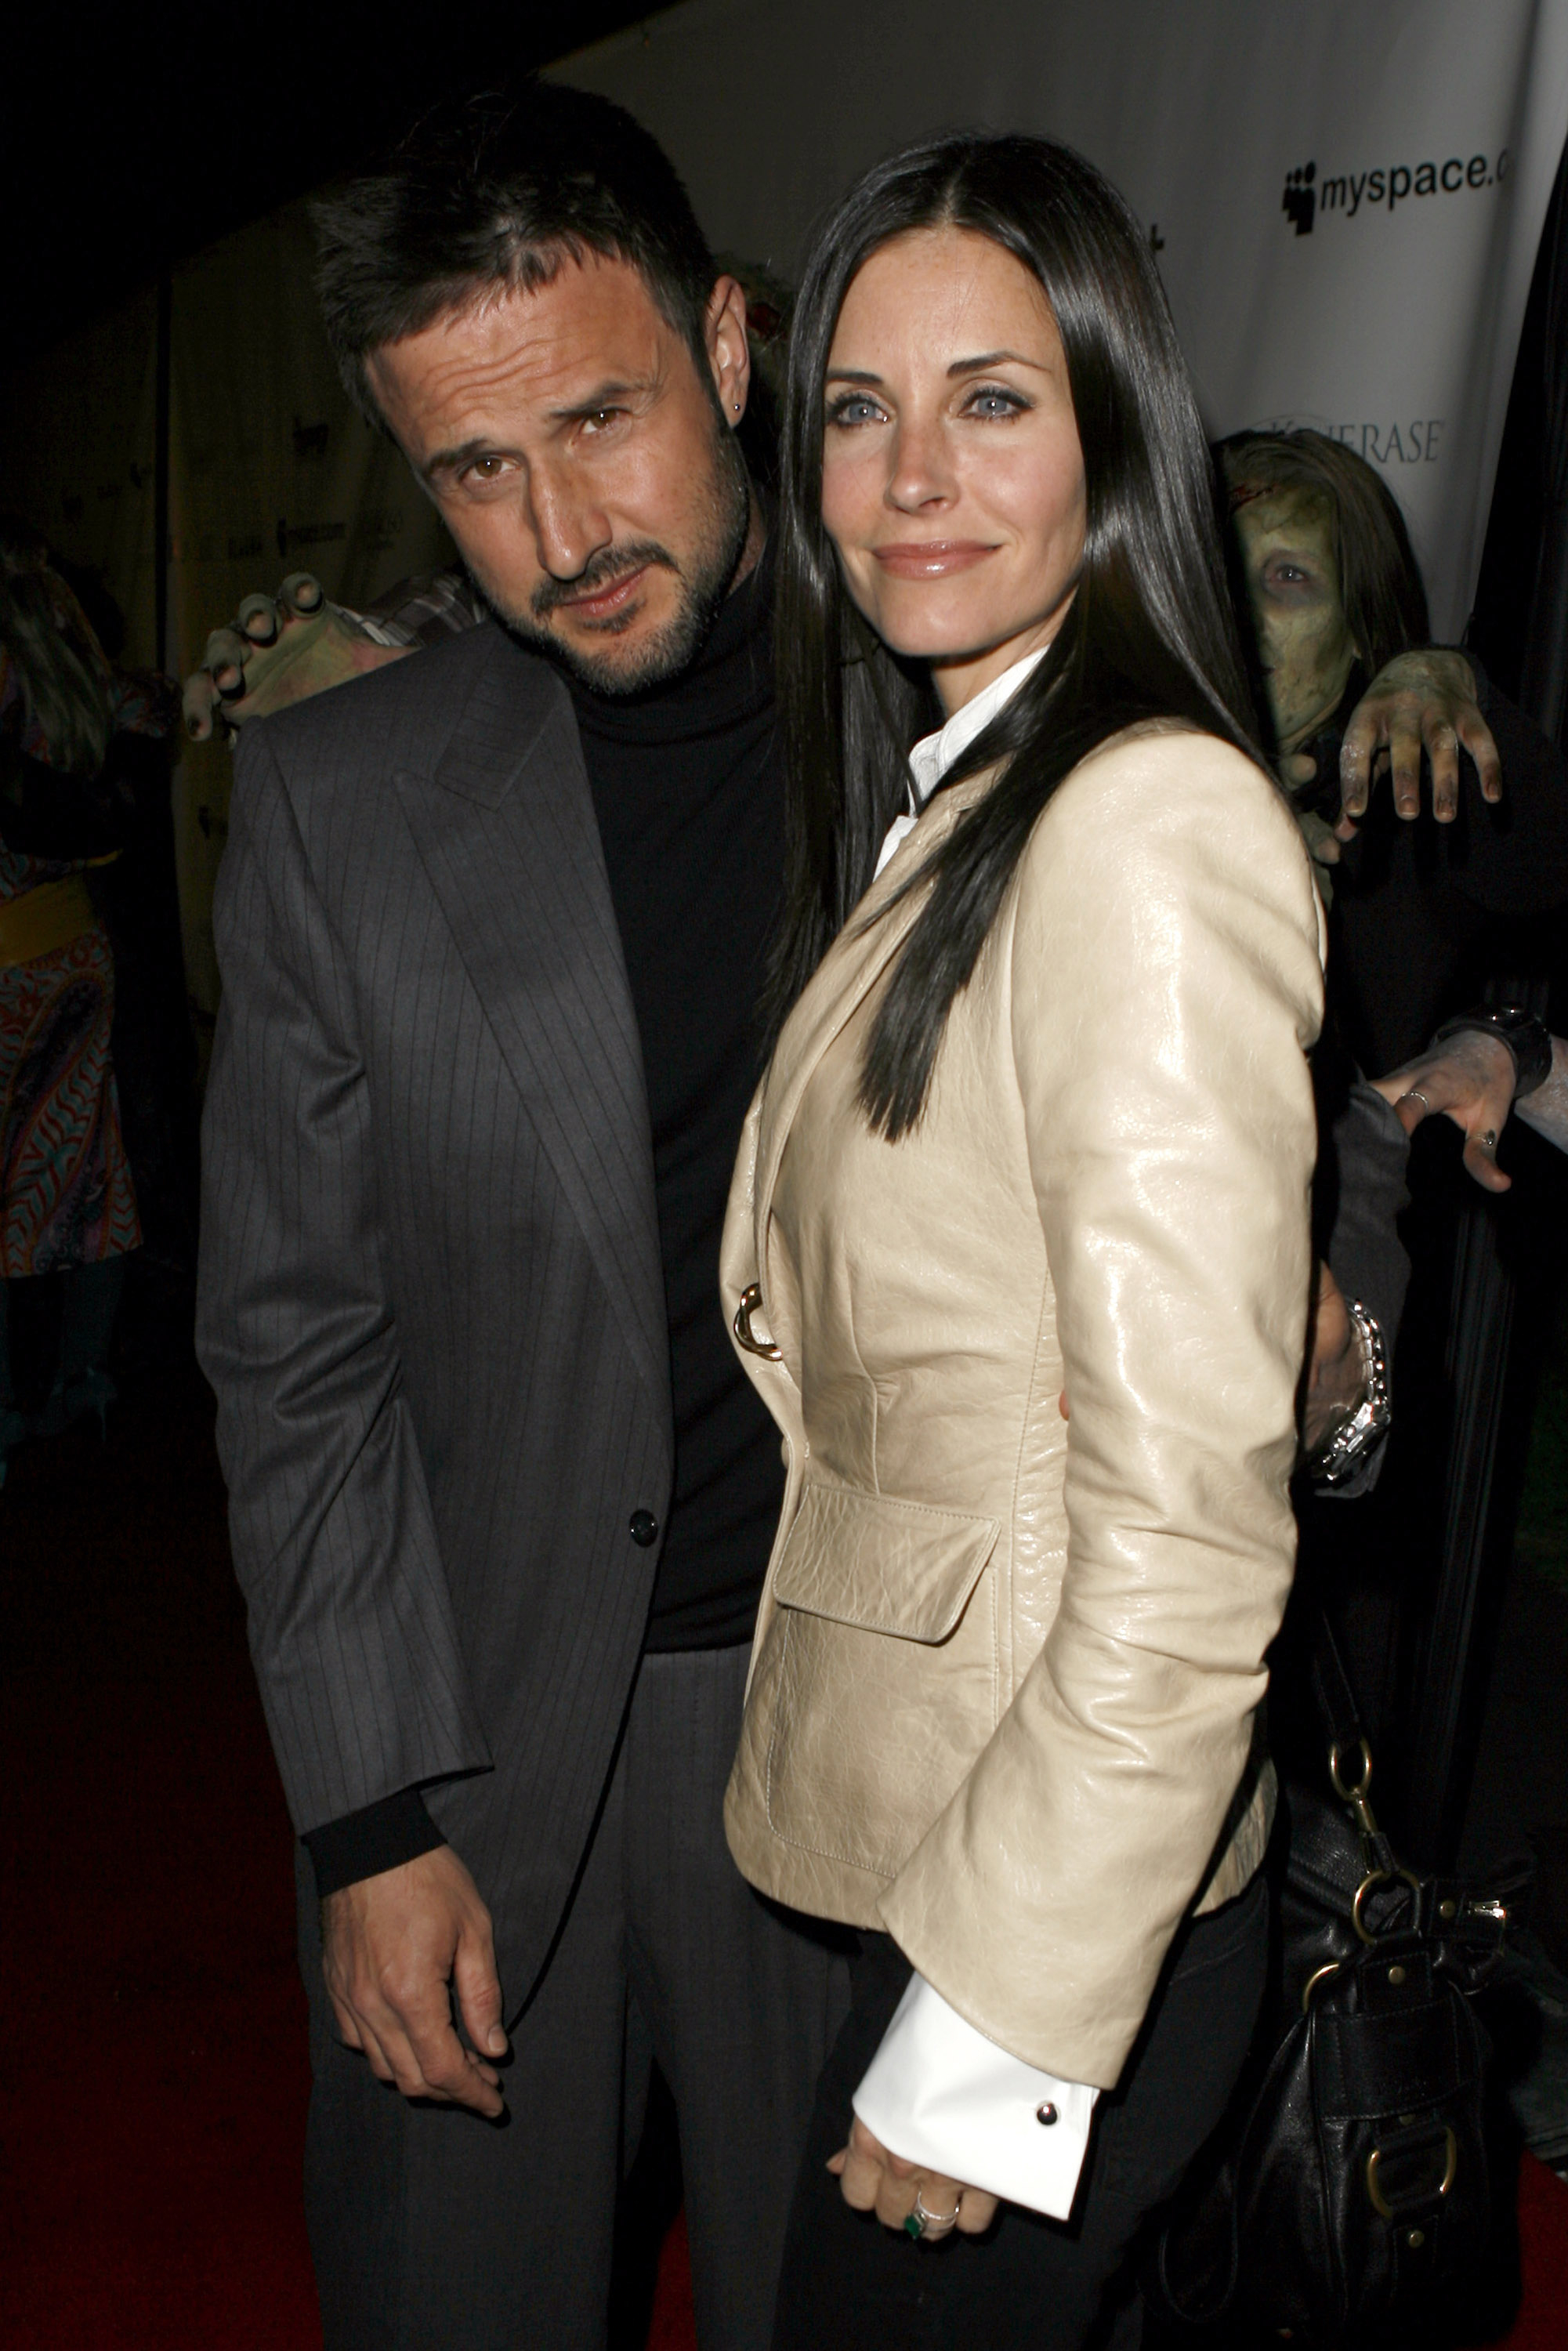 David Arquette and Courteney Cox-Arquette at a movie premiere